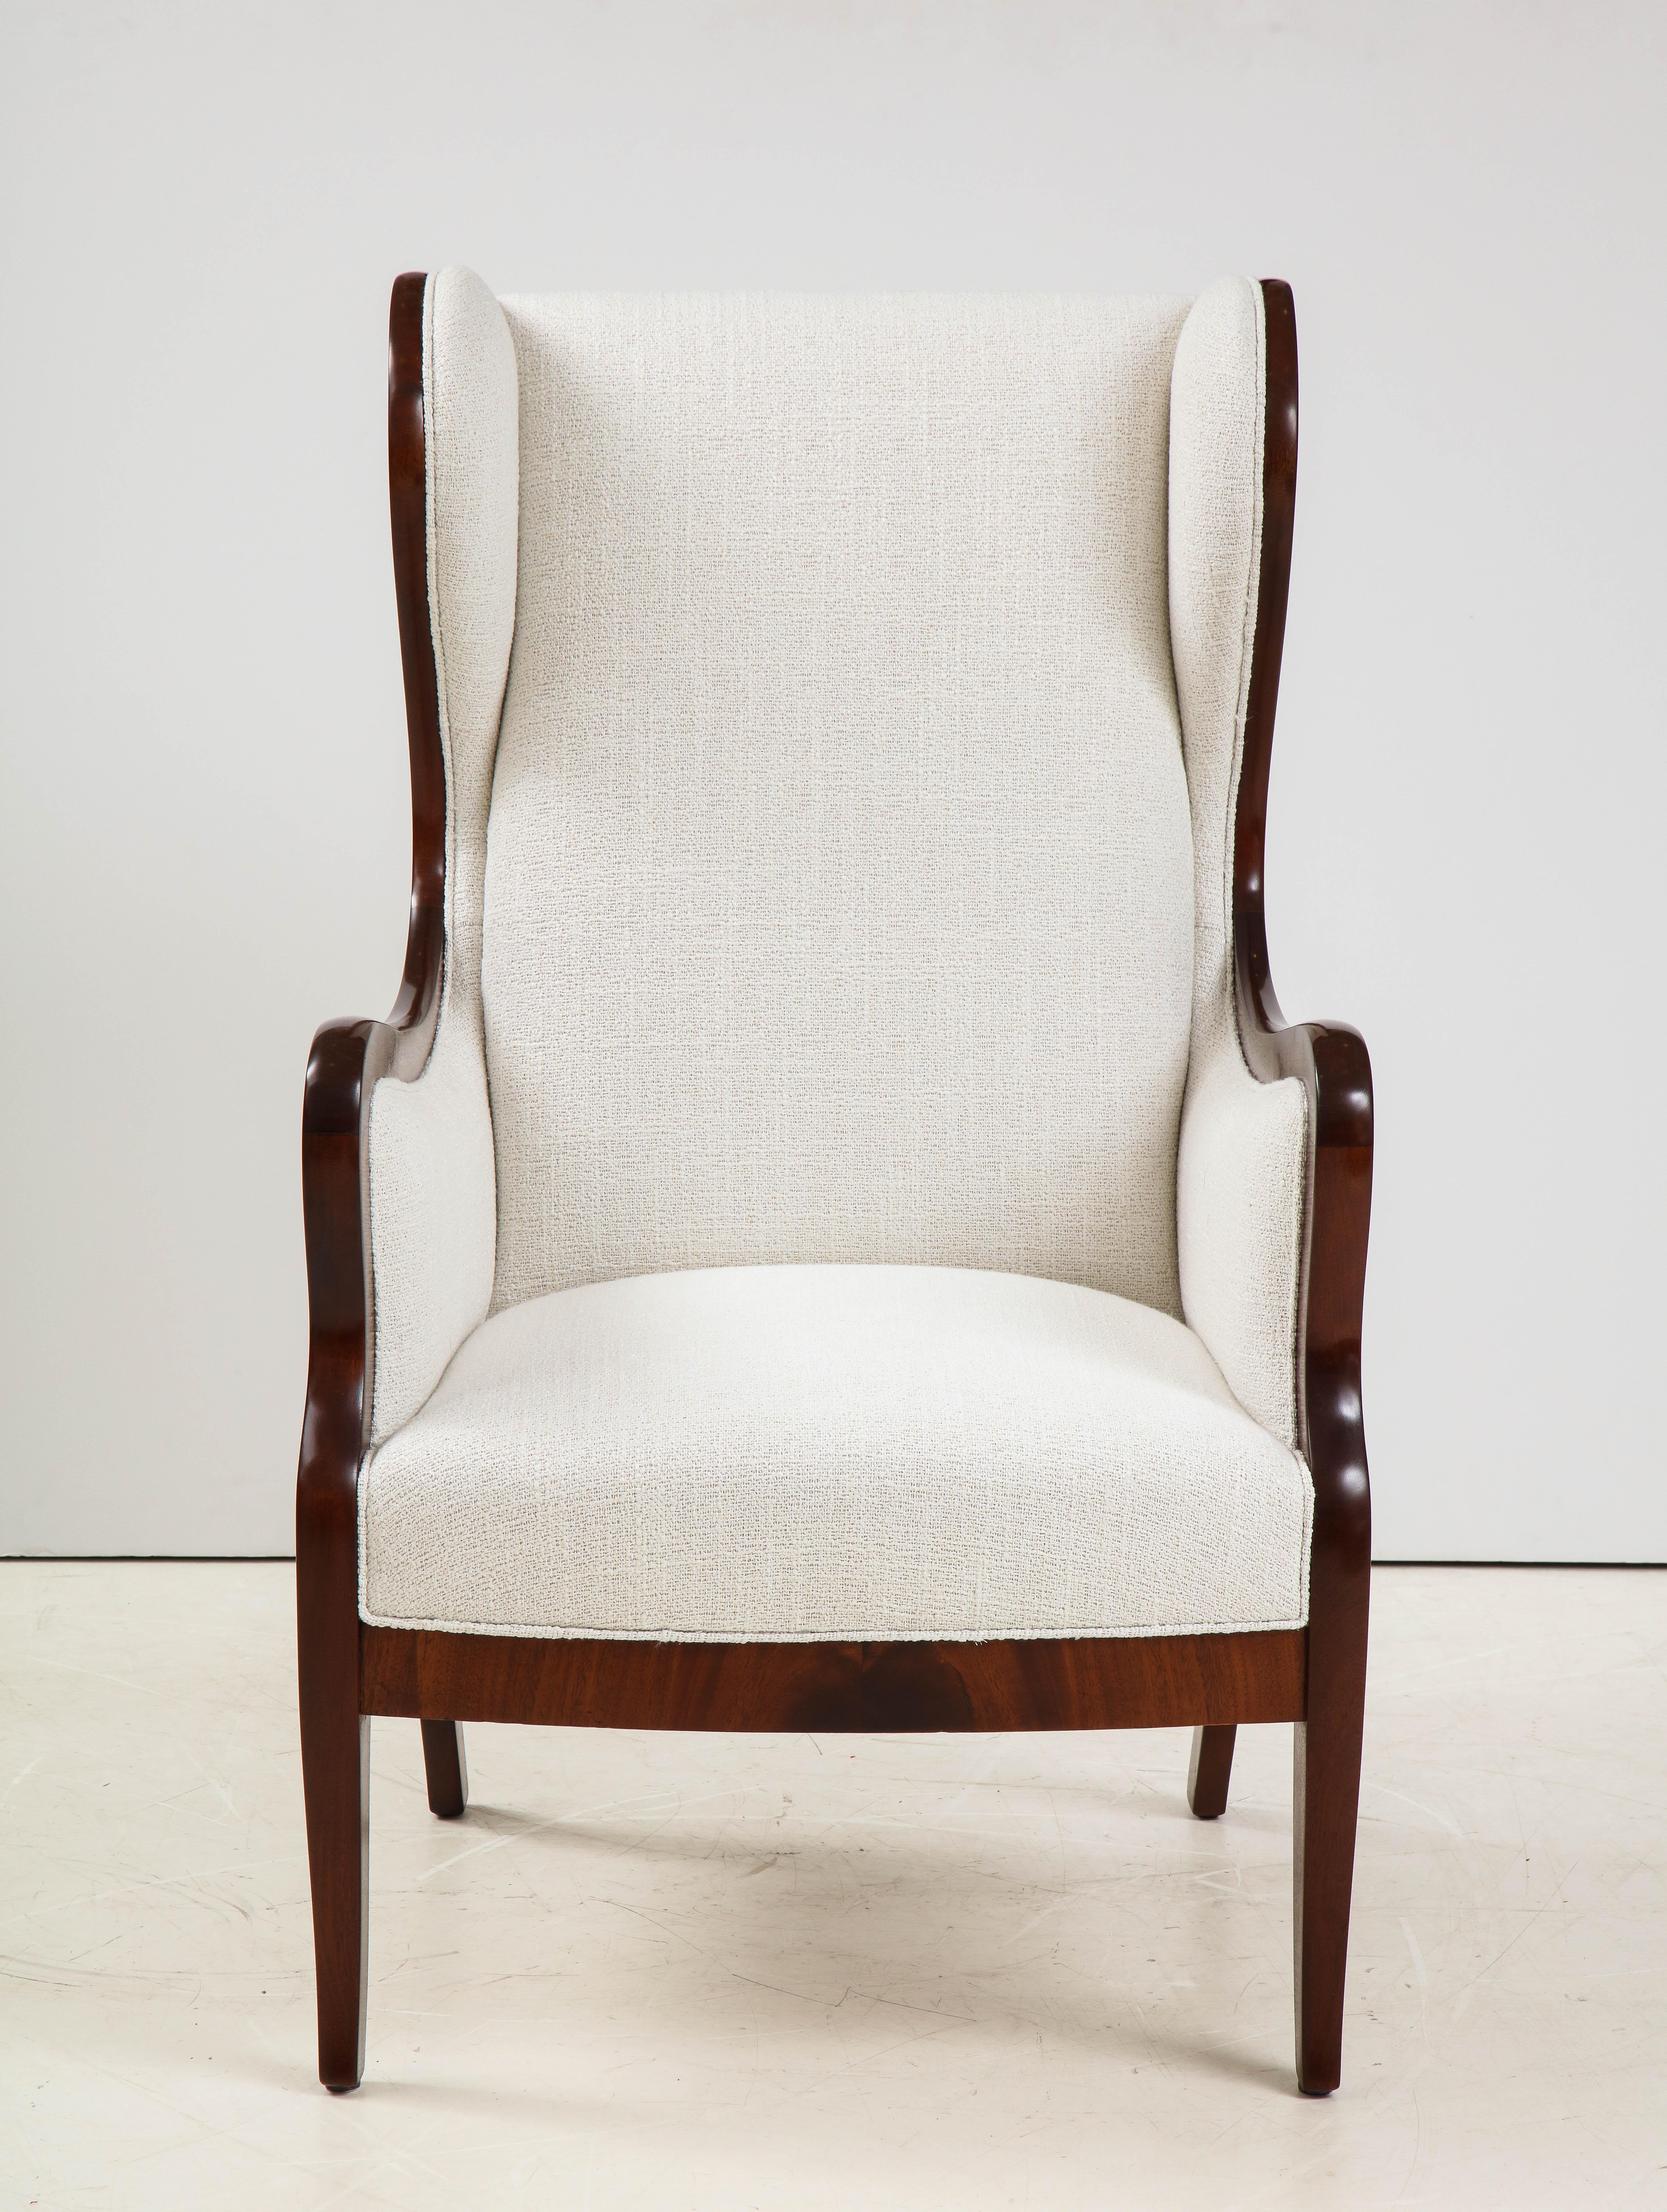 Frits Henningsen Mahogany and Upholstered Wing Chair, Circa 1940-50 2